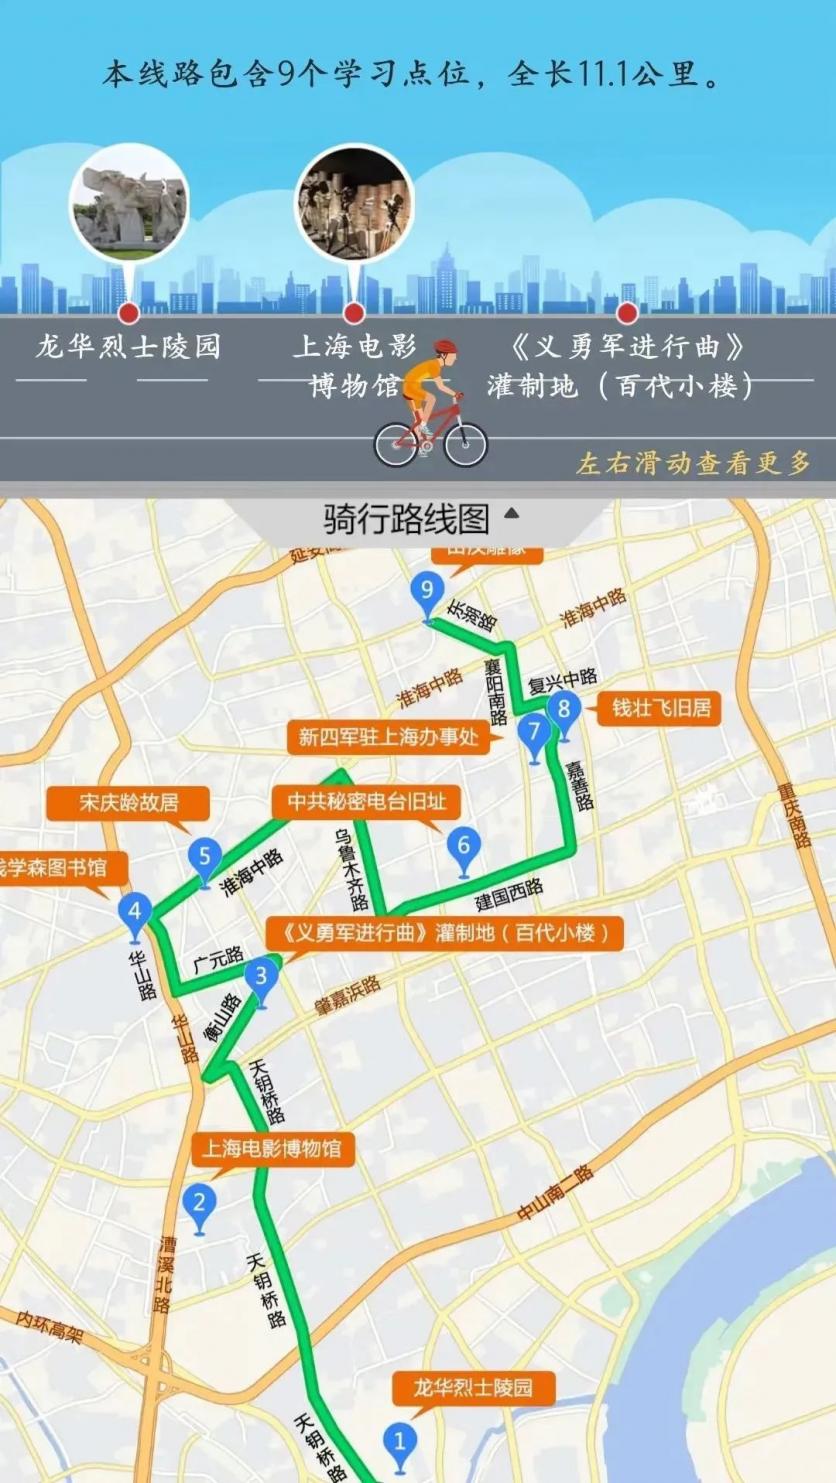 上海徐汇区有哪些值得骑行路线？下面这6条人文行走主题骑行路线不容错过